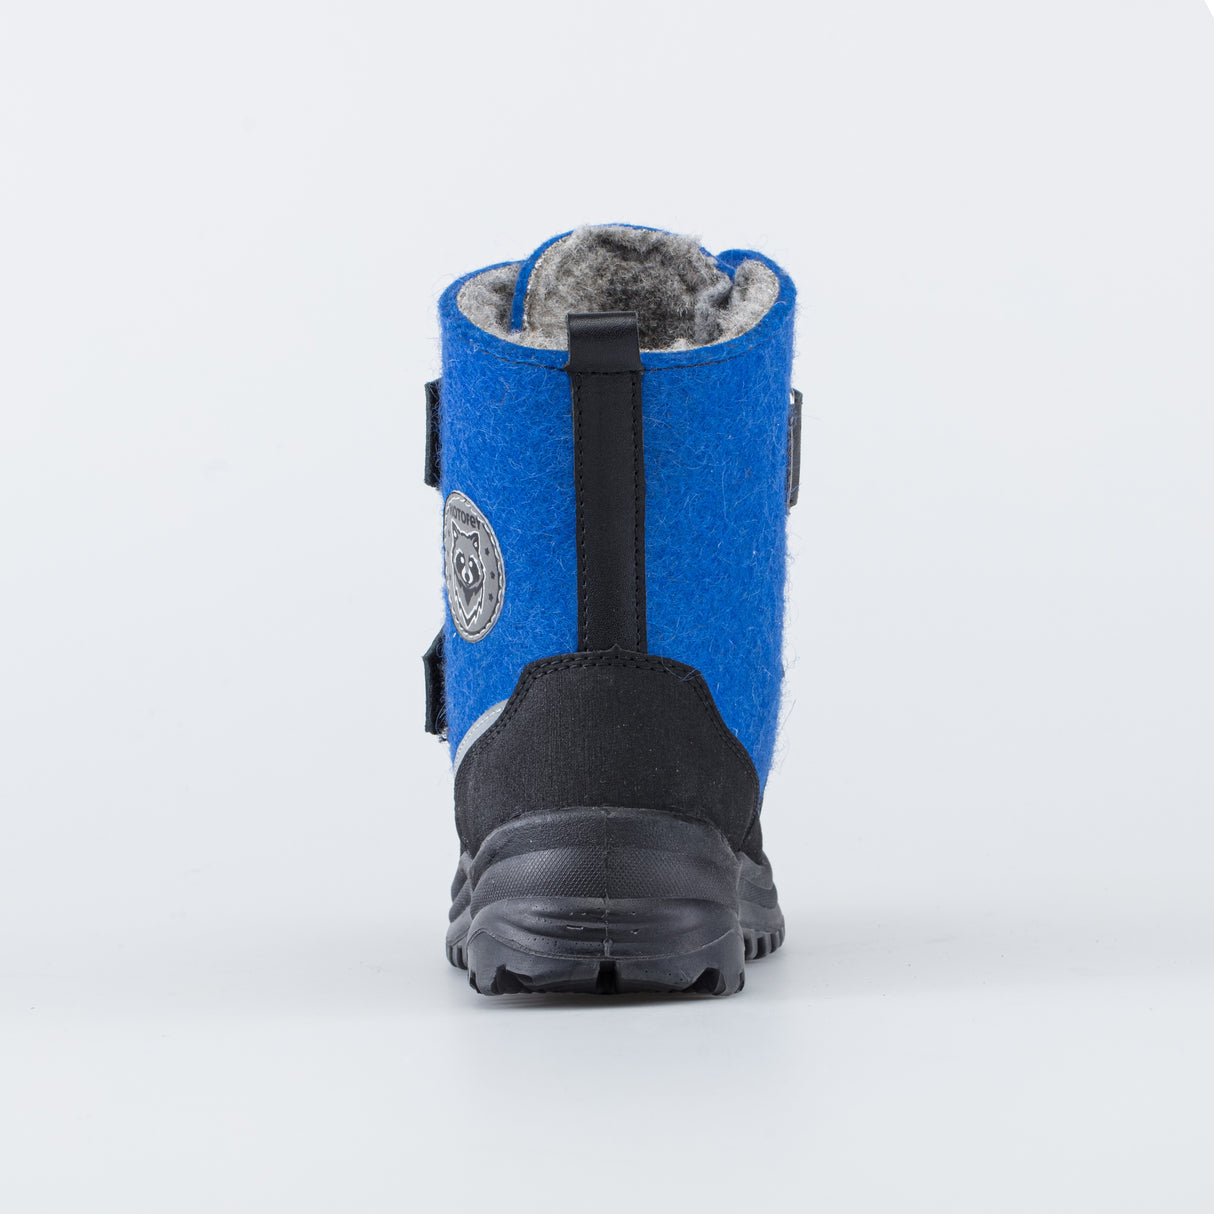 Blue-black felt boots, KOTOFEY